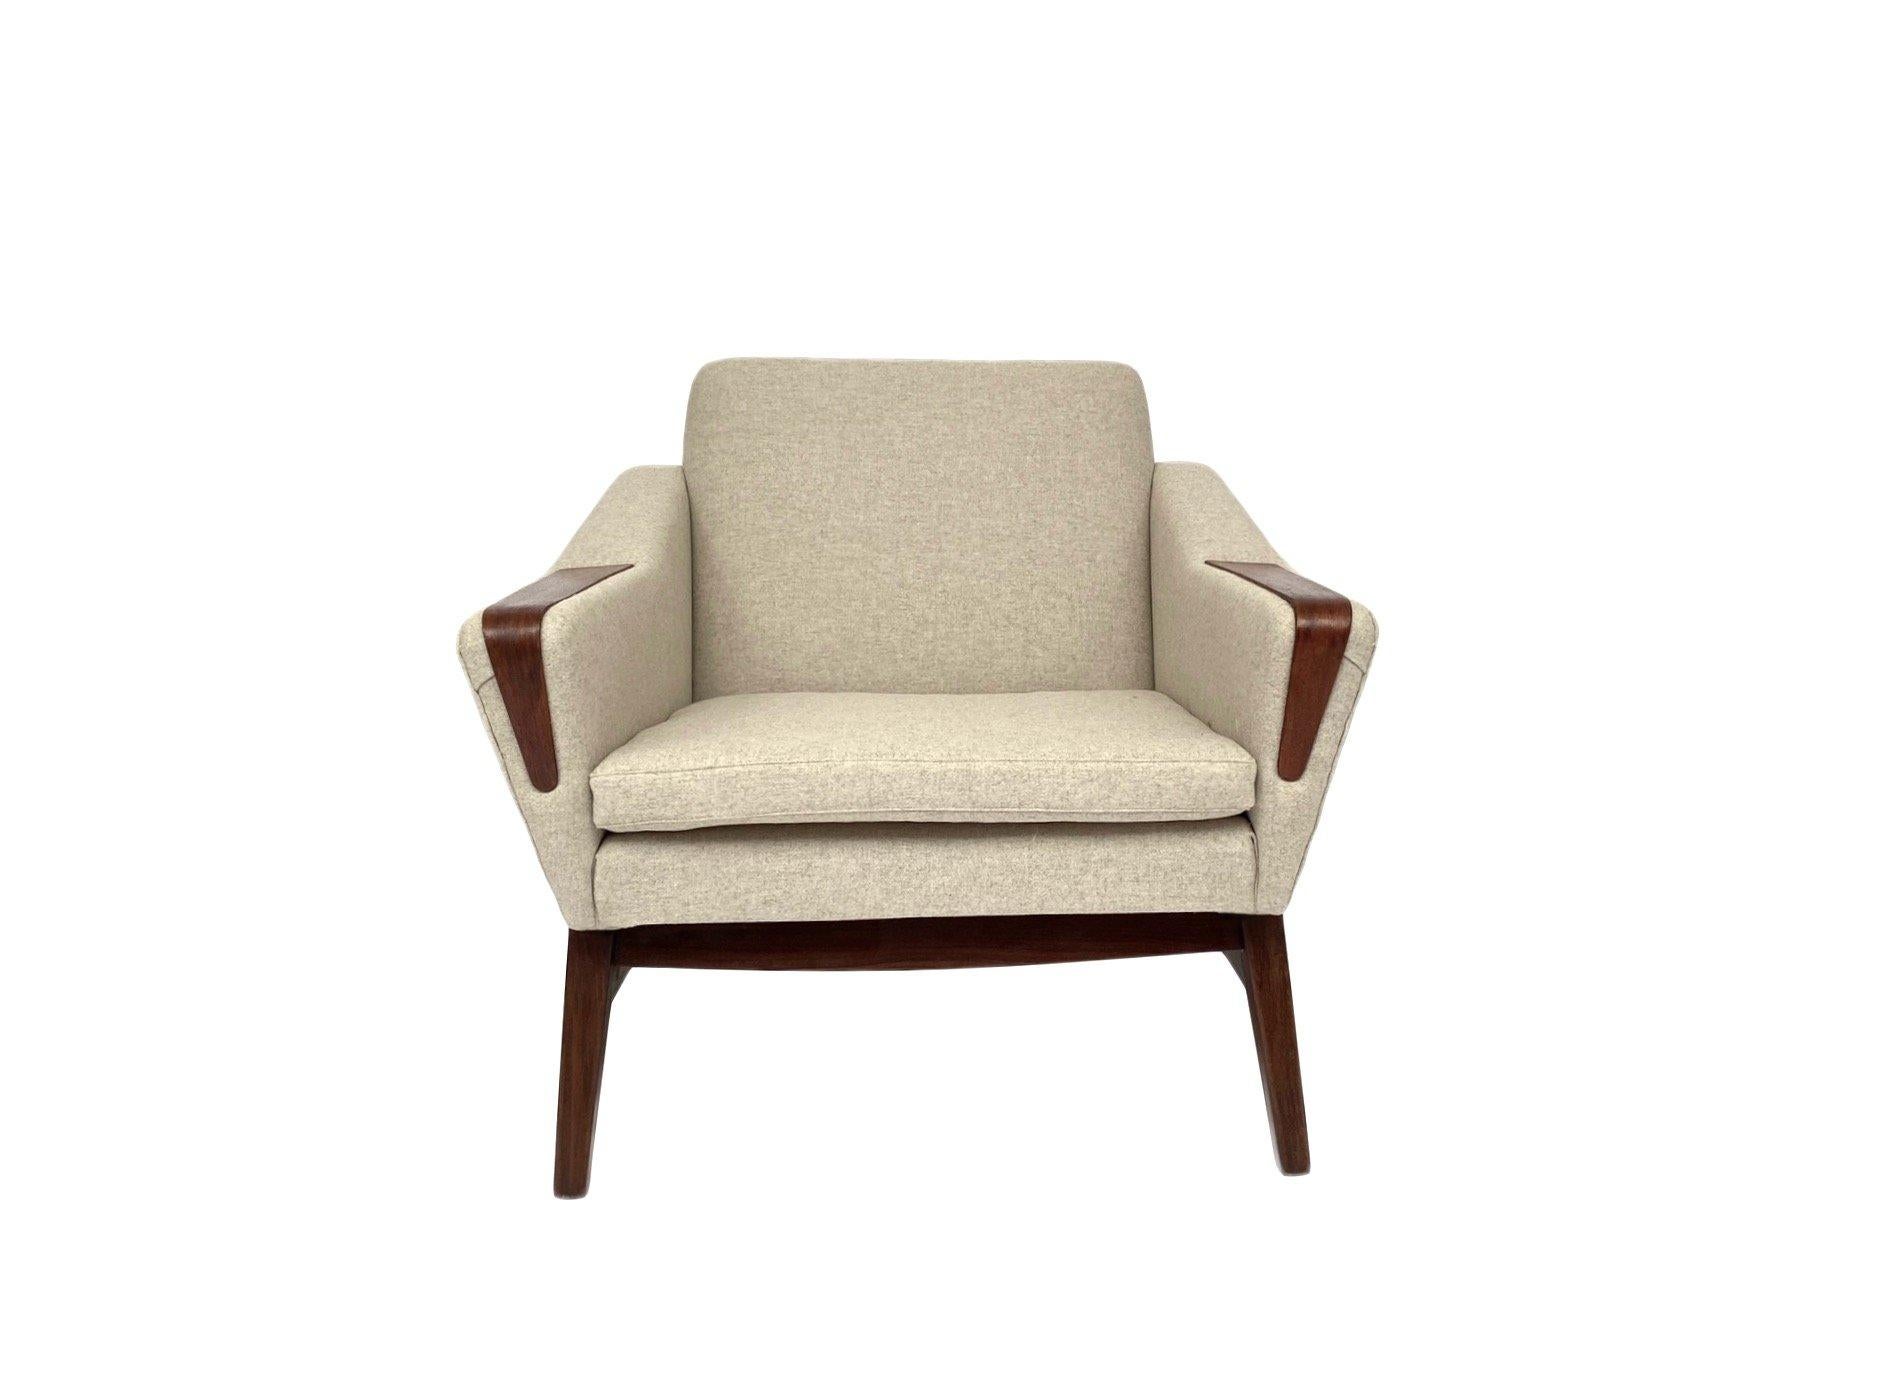 Ce magnifique fauteuil danois en laine crème et en teck constitue un ajout élégant à tout espace de vie ou de travail.

La chaise est dotée d'une large assise et d'un dossier rembourré pour un meilleur confort. Un meuble scandinave classique qui